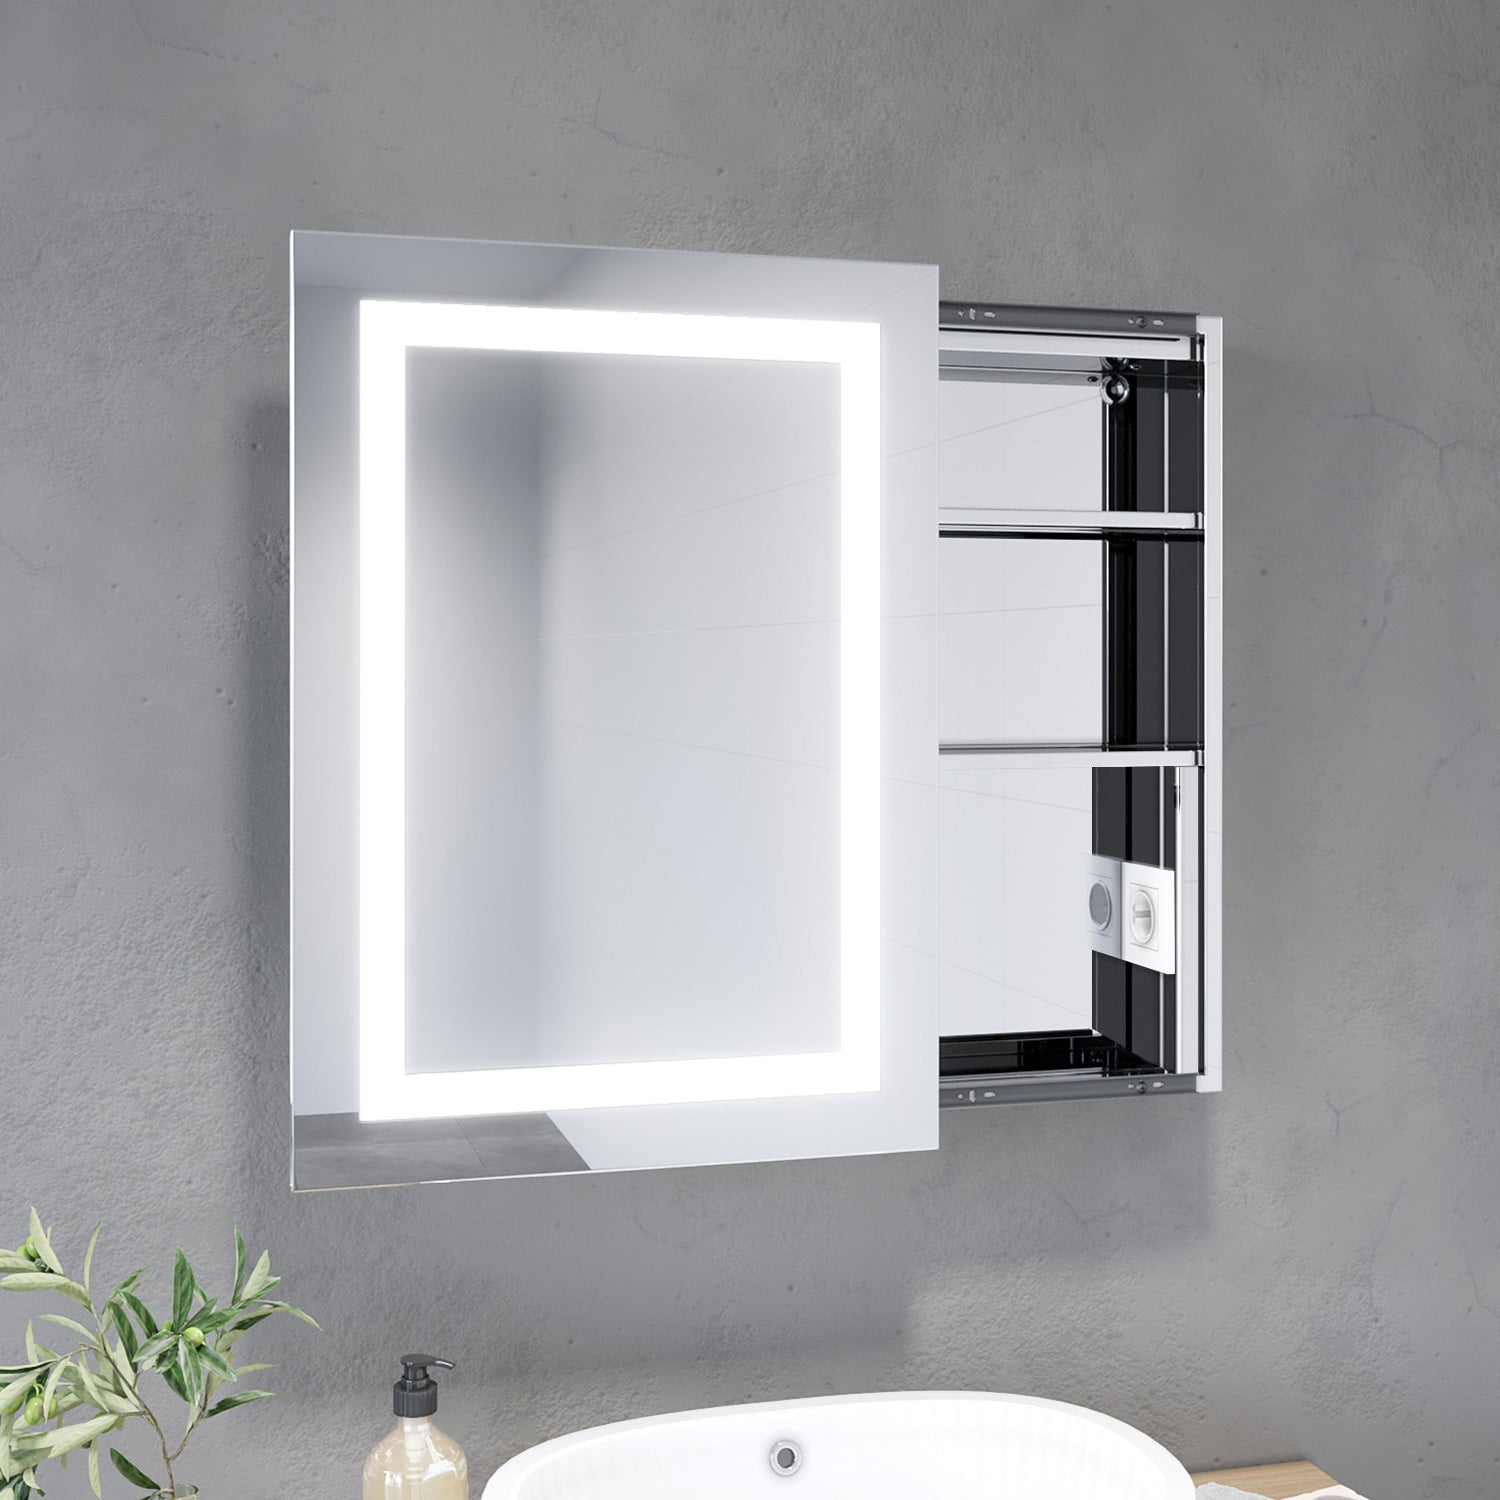 Badezimmer LED Spiegelschrank mit Beleuchtung Schiebetür Kabelanschluss 50 x 70 x 13cm